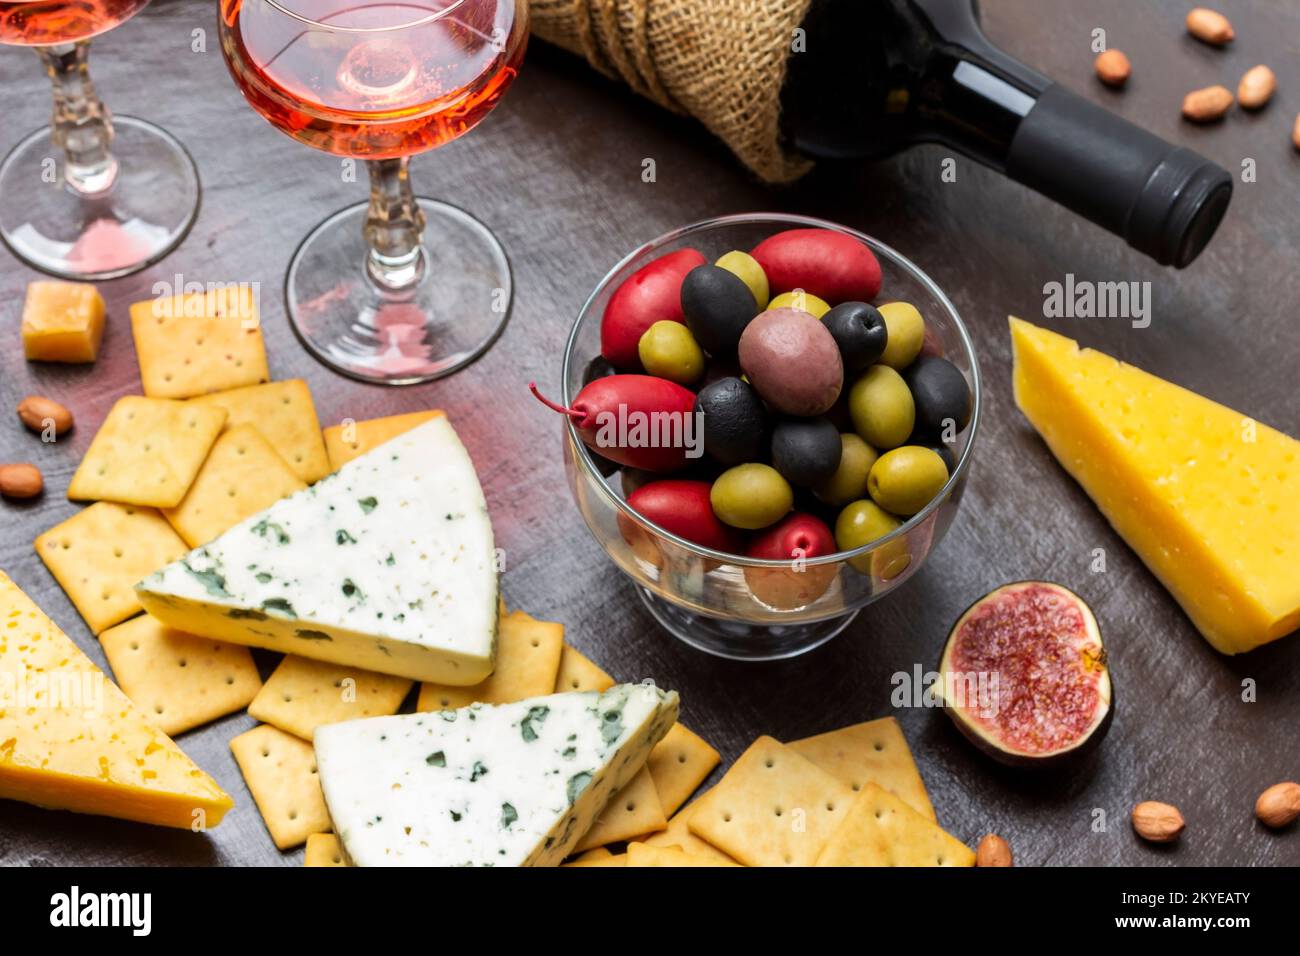 Mehrfarbige Oliven in einer Glasschüssel. Käse und Kekse und eine halbe Feige. Eine Flasche Wein und zwei Gläser Rotwein. Draufsicht. Brauner Hintergrund. Stockfoto